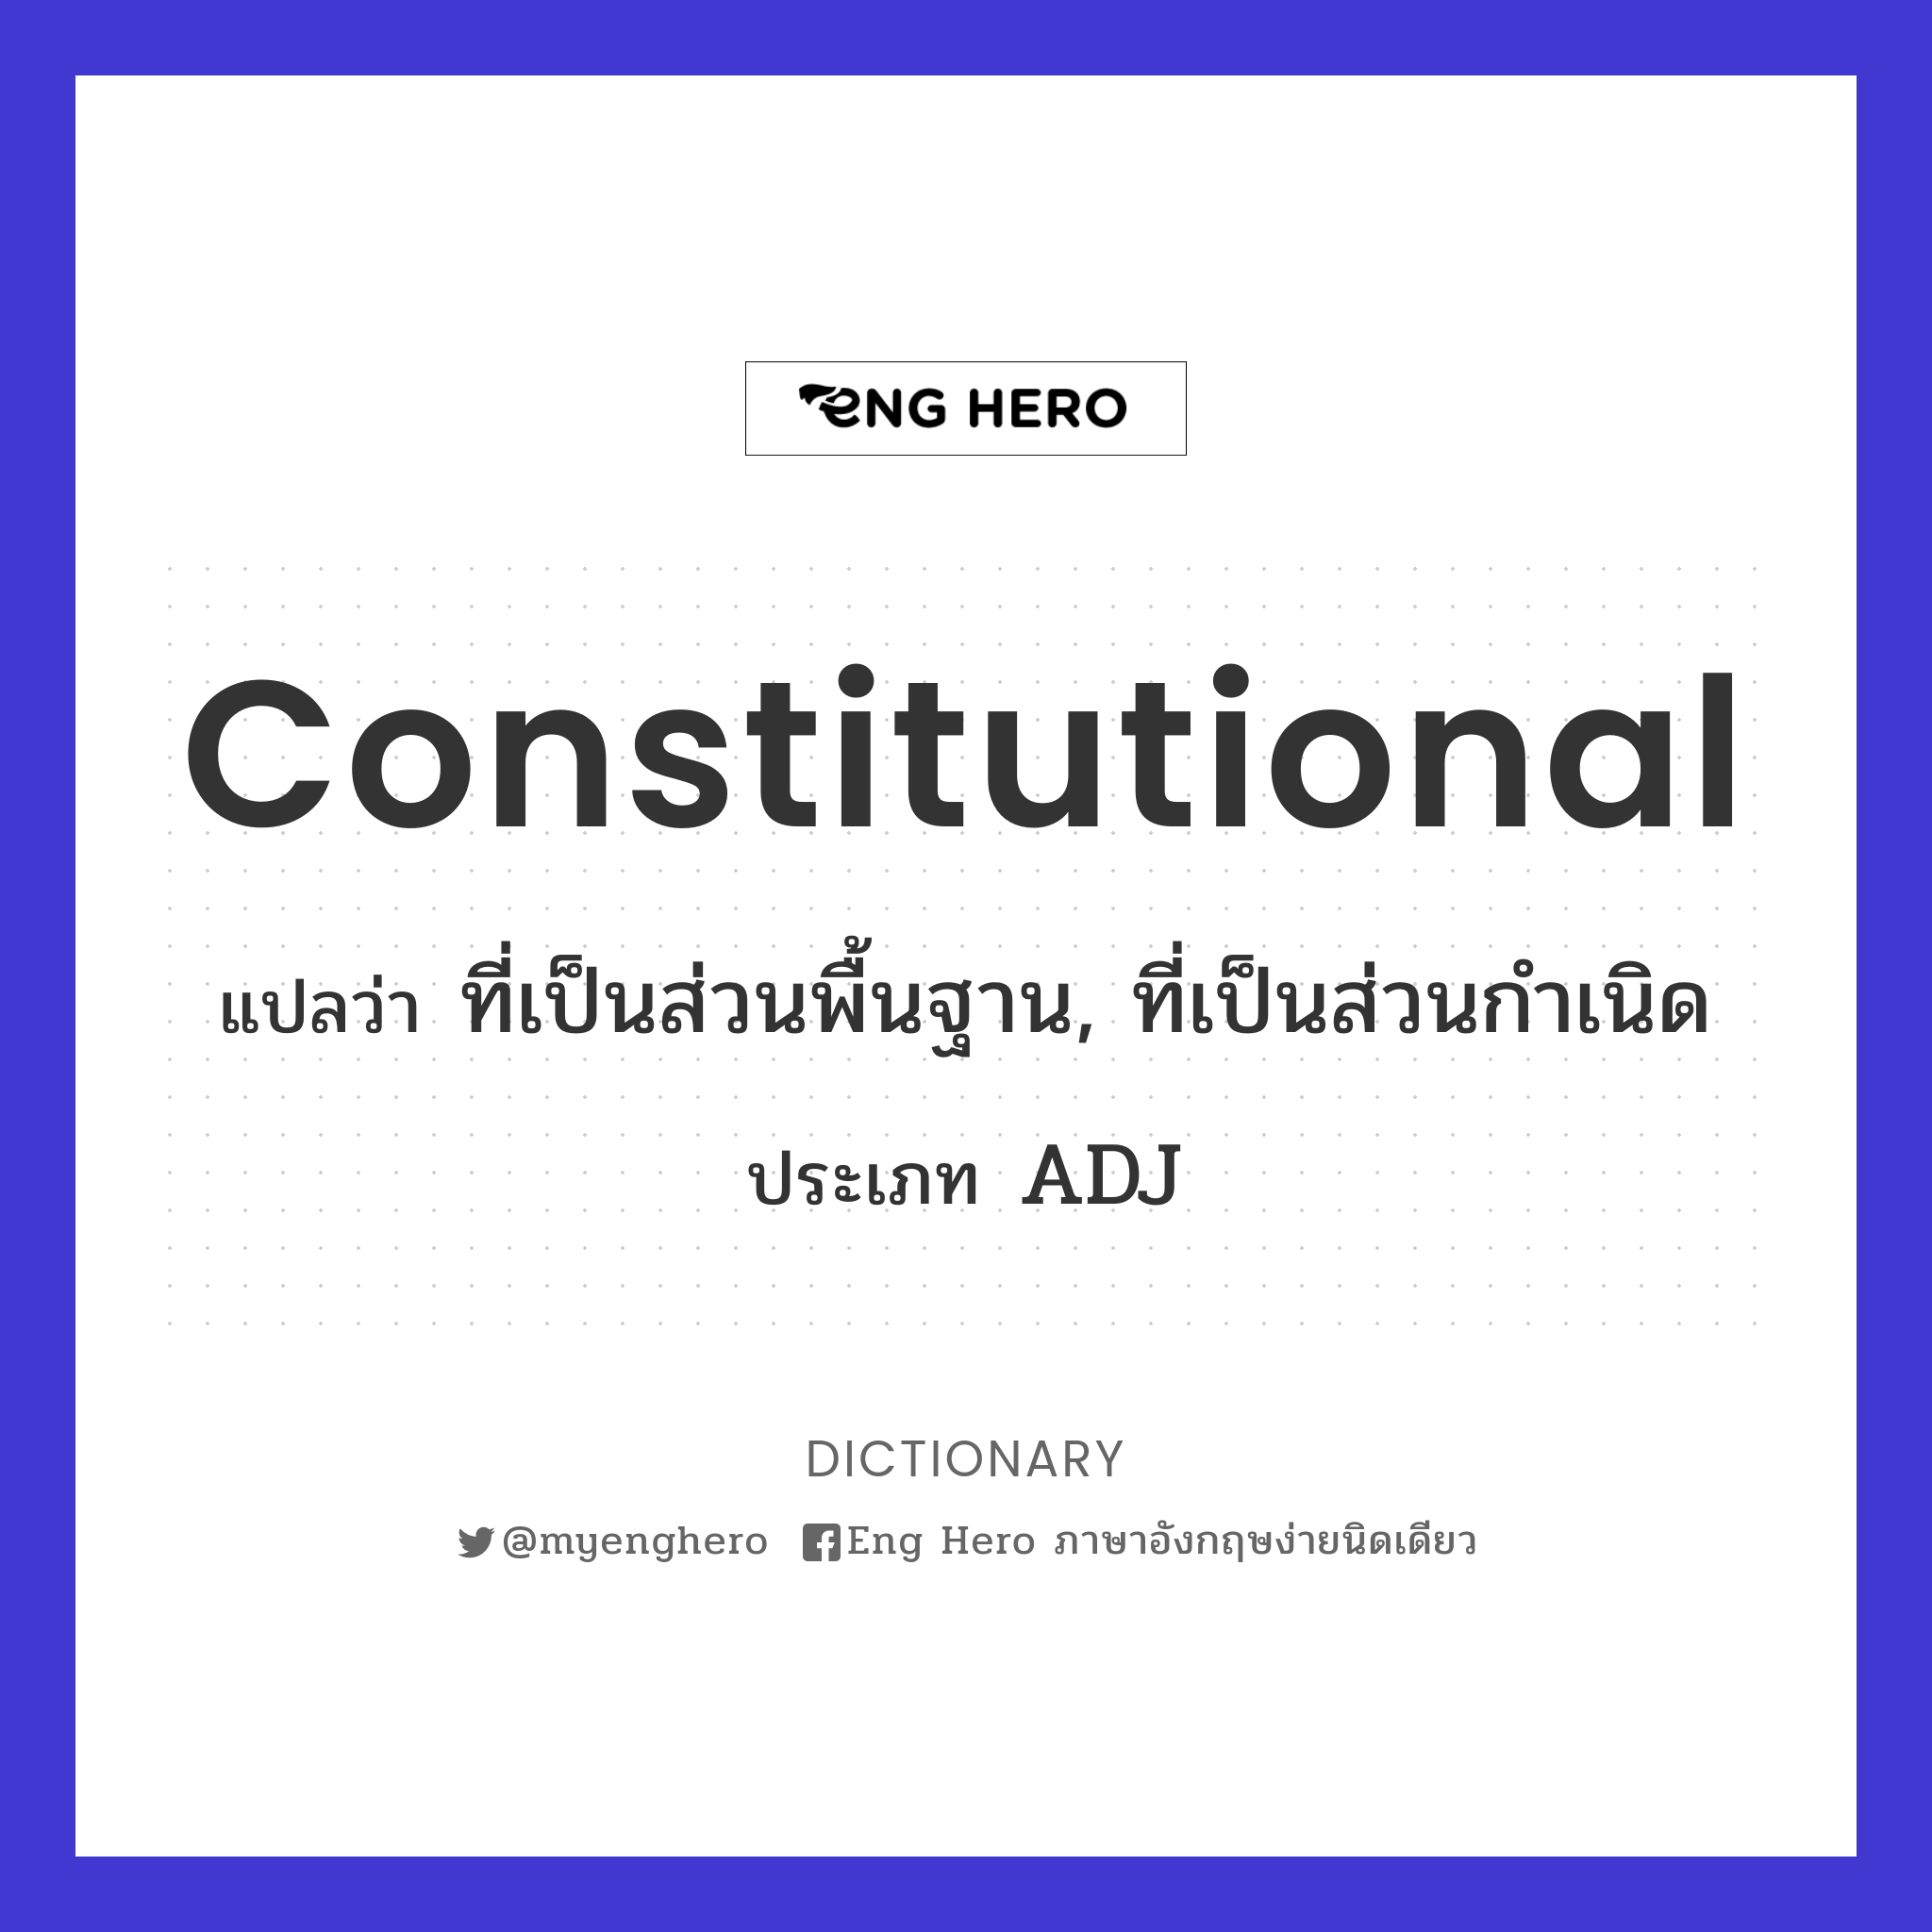 constitutional